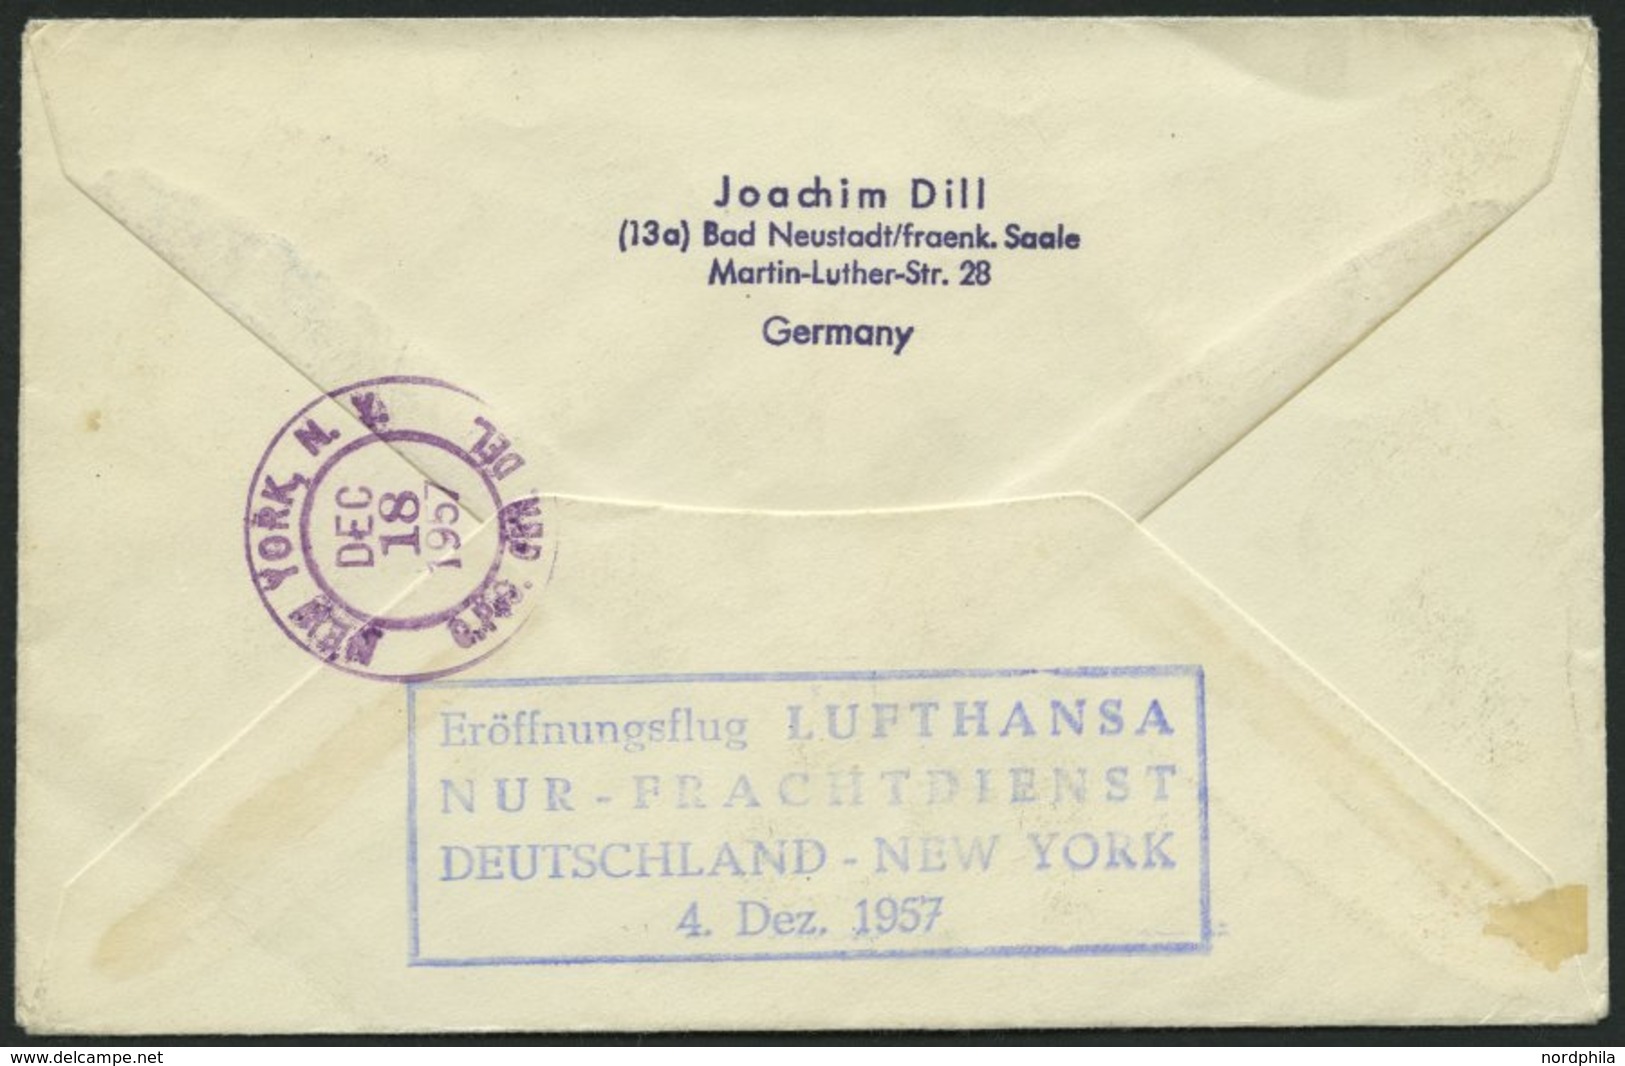 DEUTSCHE LUFTHANSA Brief , 4.12.1957, Deutschland-New York, Nur Frachtdienst, Prachtbrief - Usados